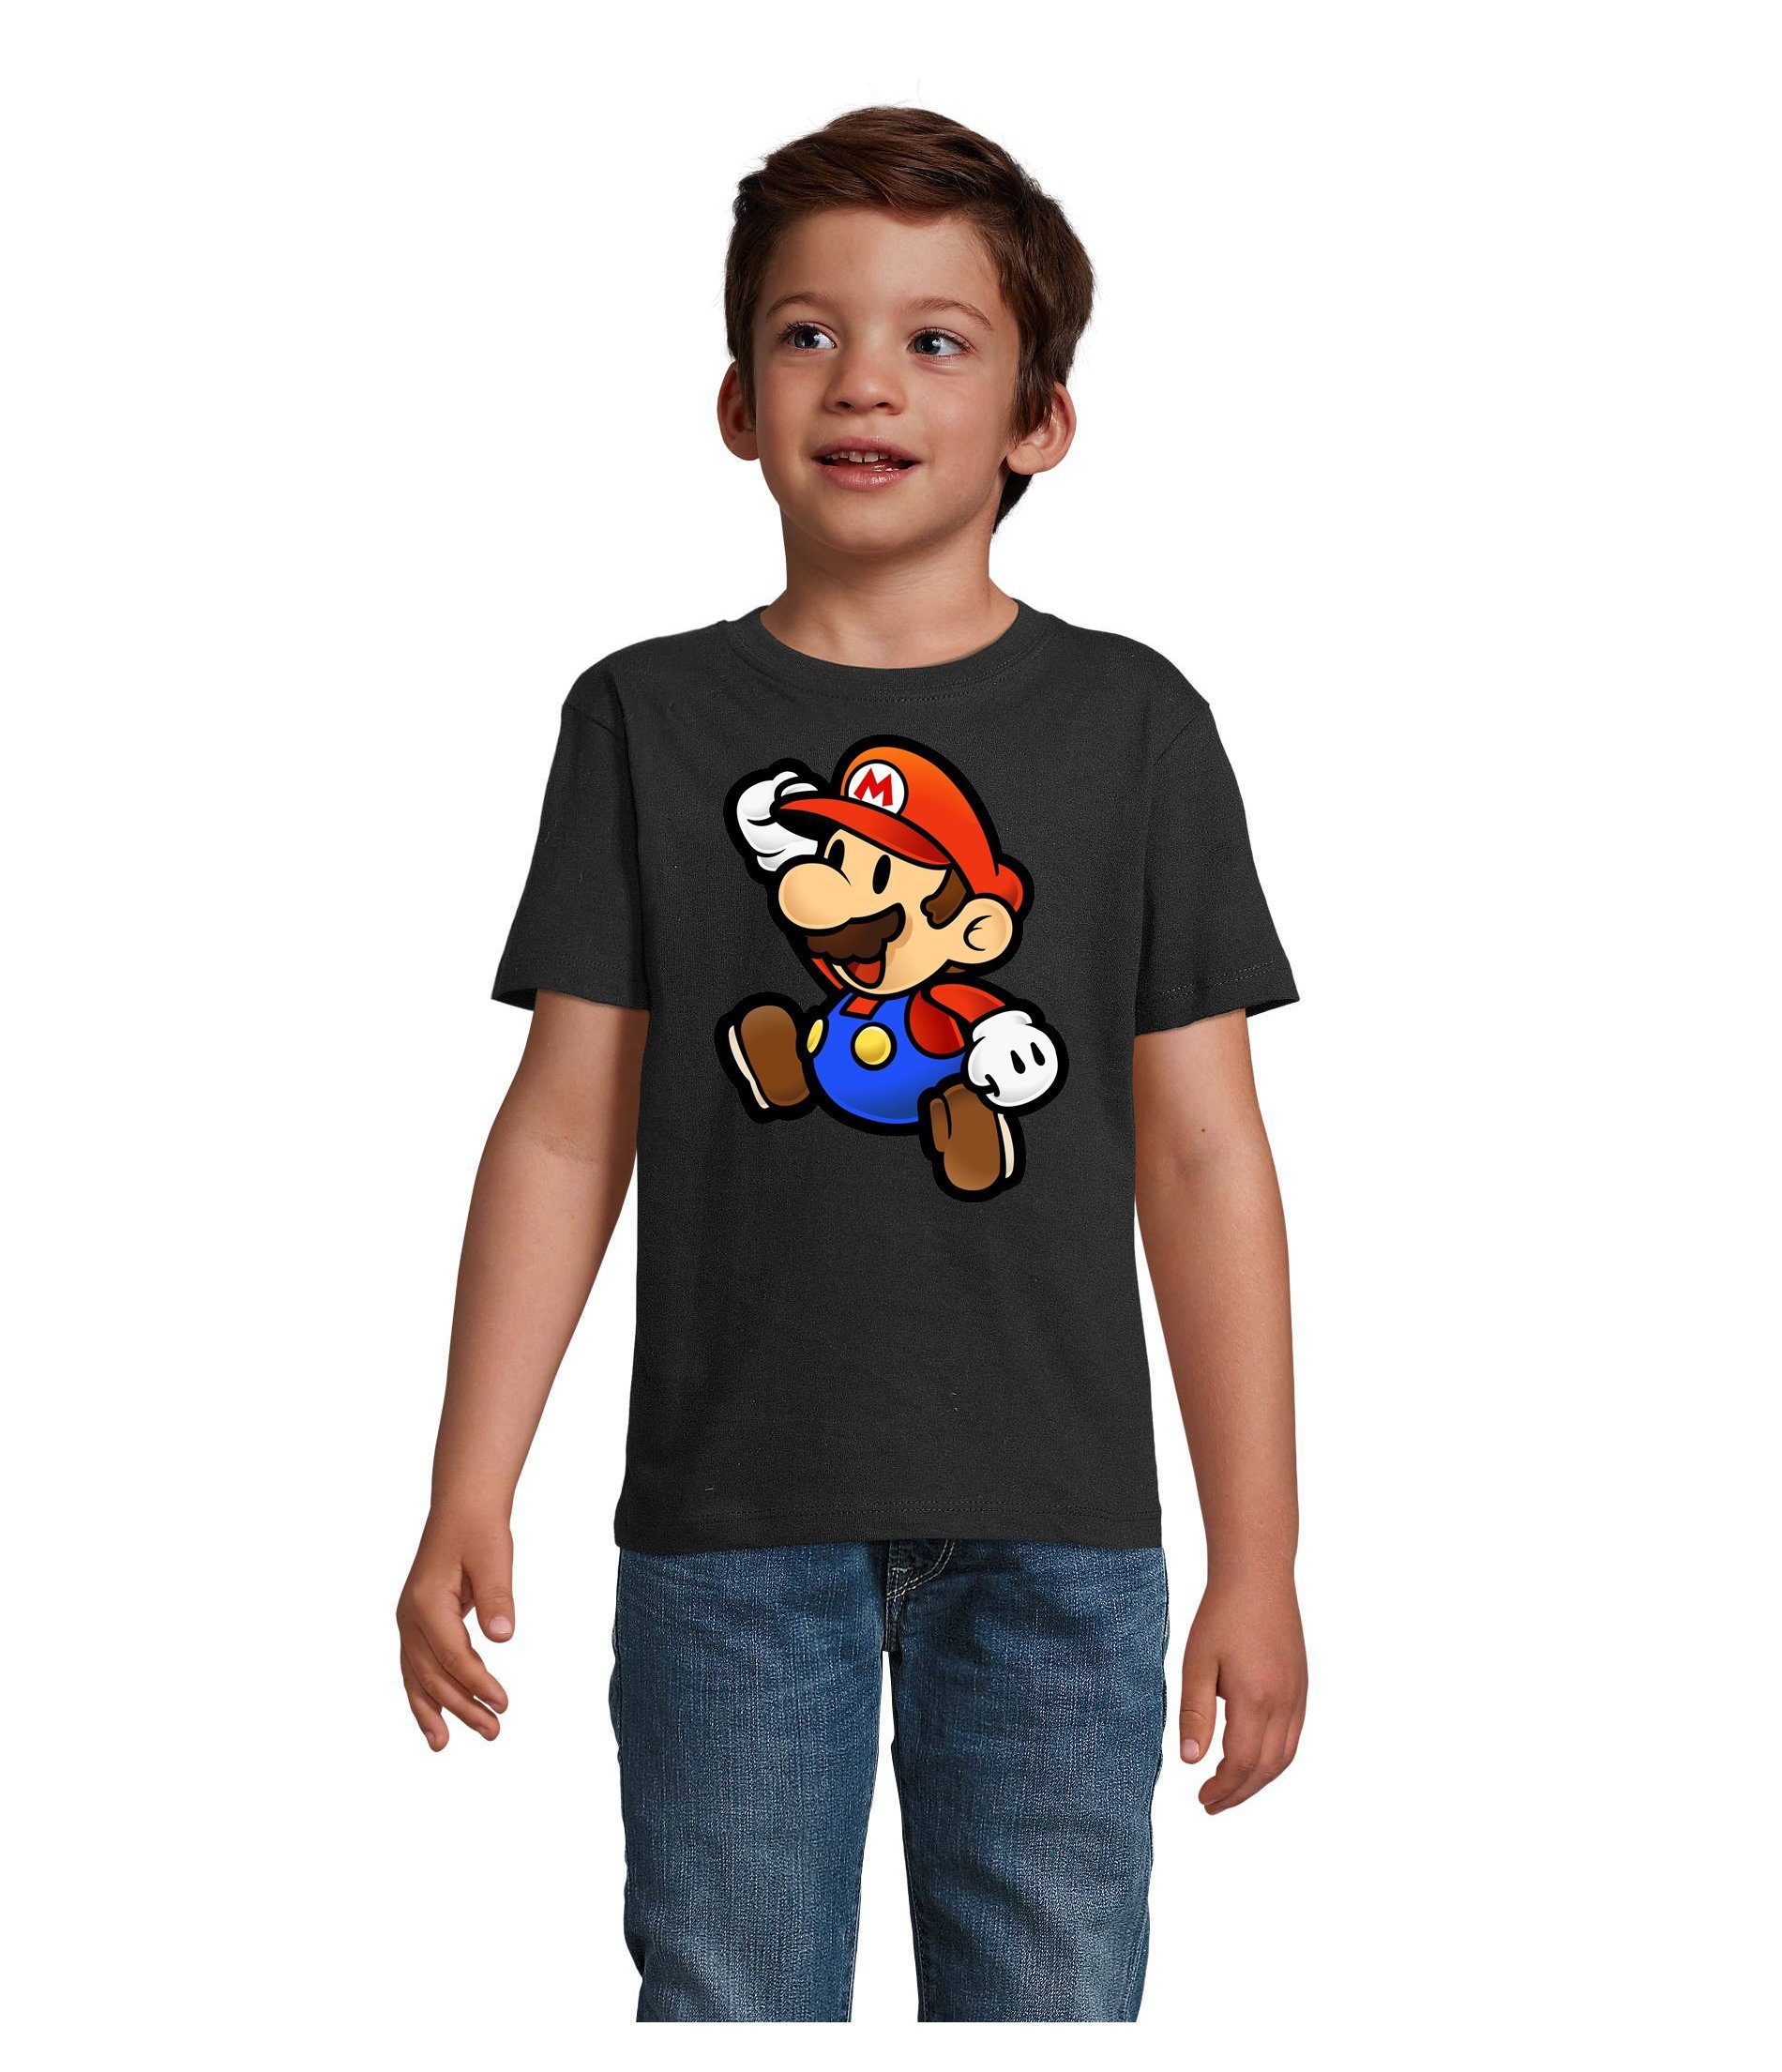 Blondie & Brownie T-Shirt Kinder Jungen & Mädchen Mario Nintendo Gaming Luigi Yoshi Super in vielen Farben Schwarz